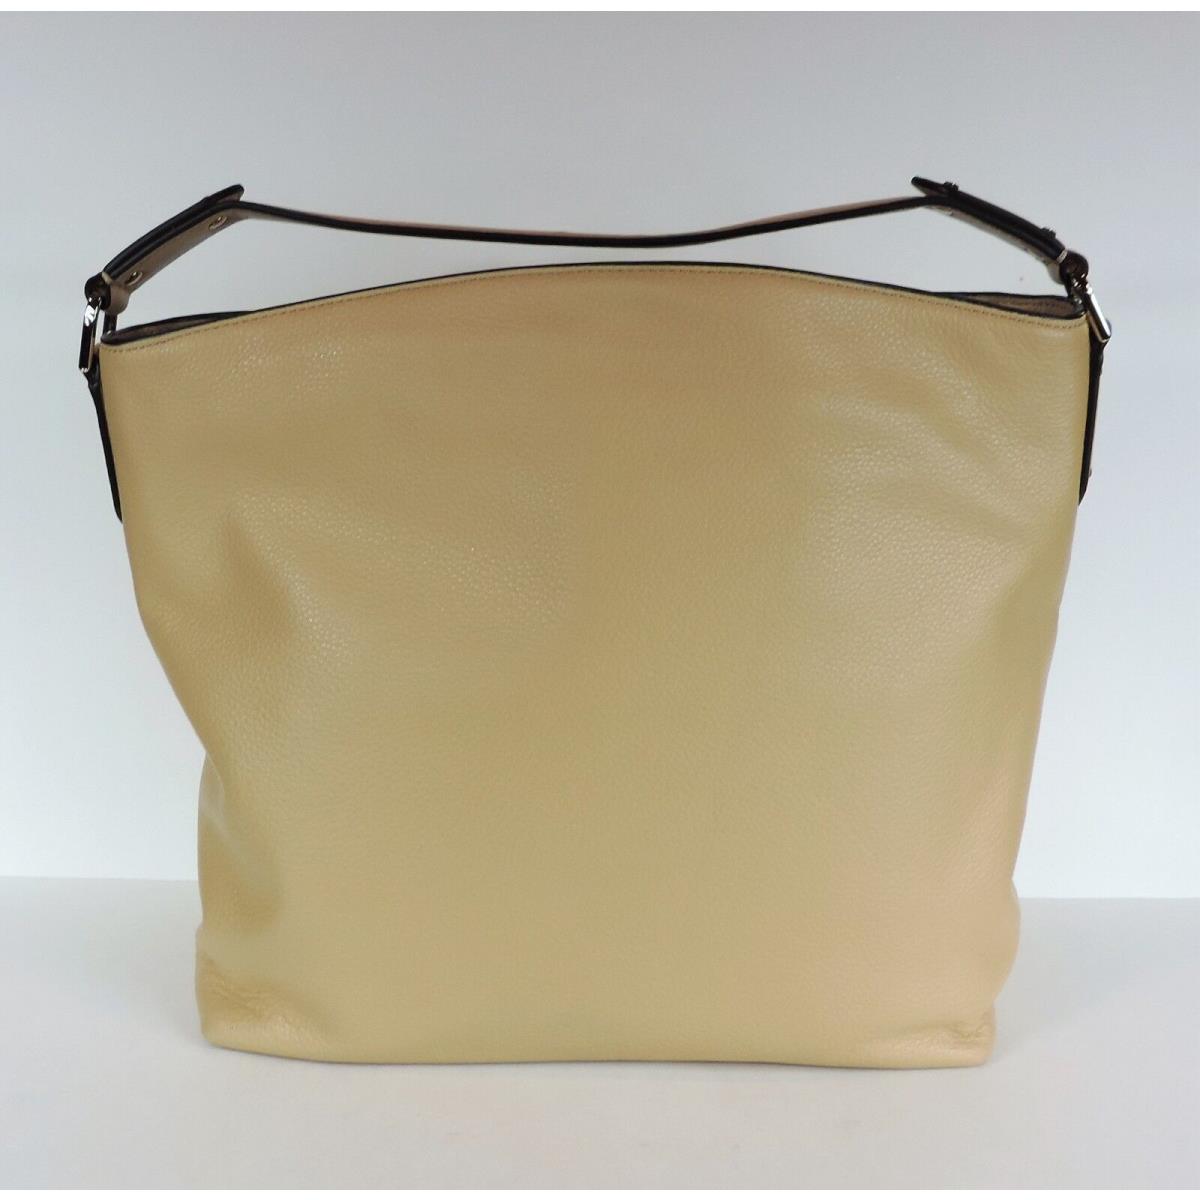 Michael Kors  bag   - butternut gold Exterior 3